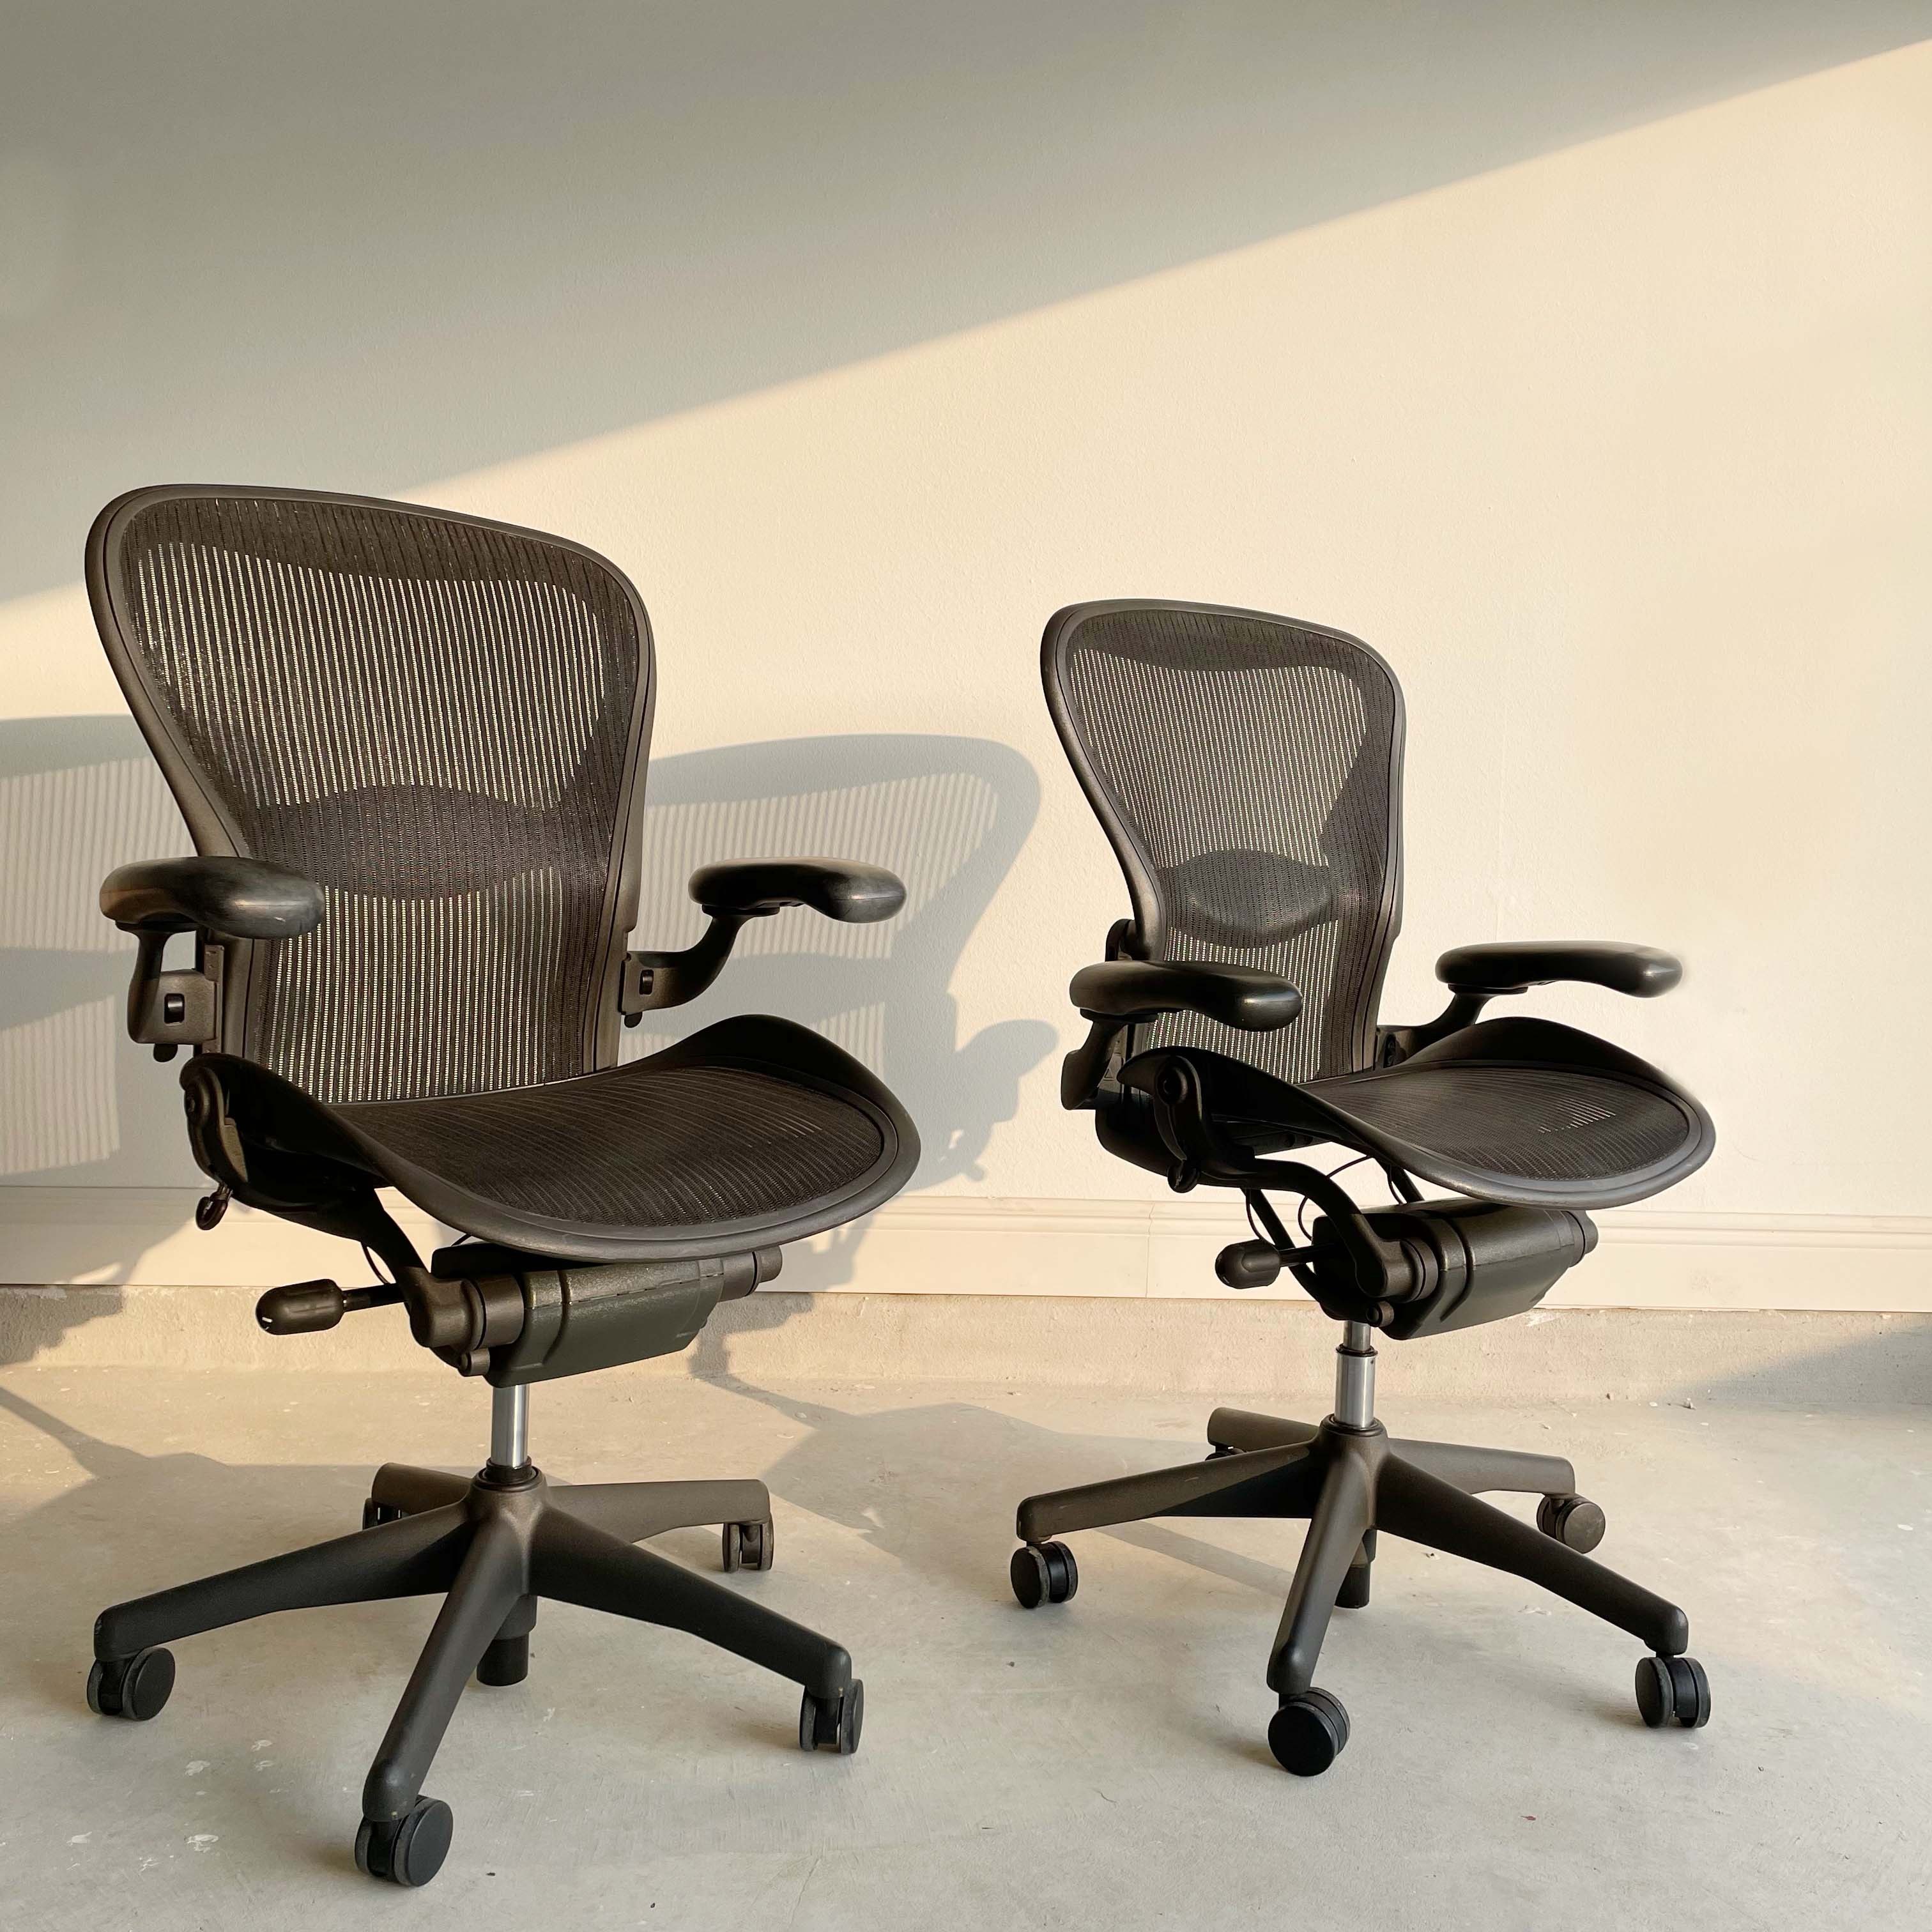 Herman Miller Aeron Chair Size B (or C) Basic Model